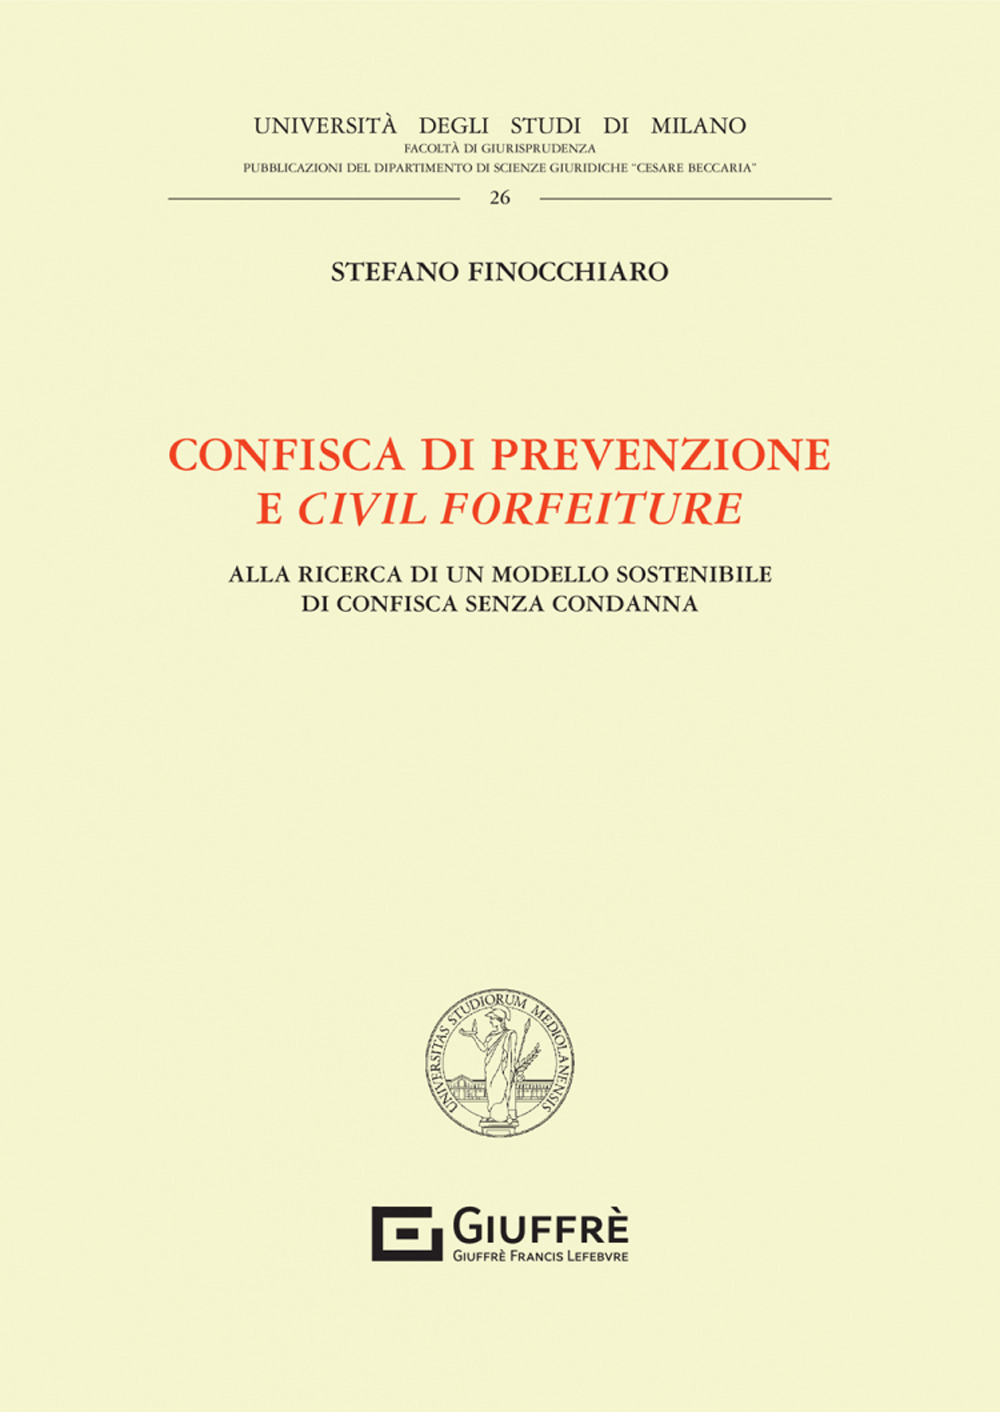 Confisca di prevenzione e civil forfeiture